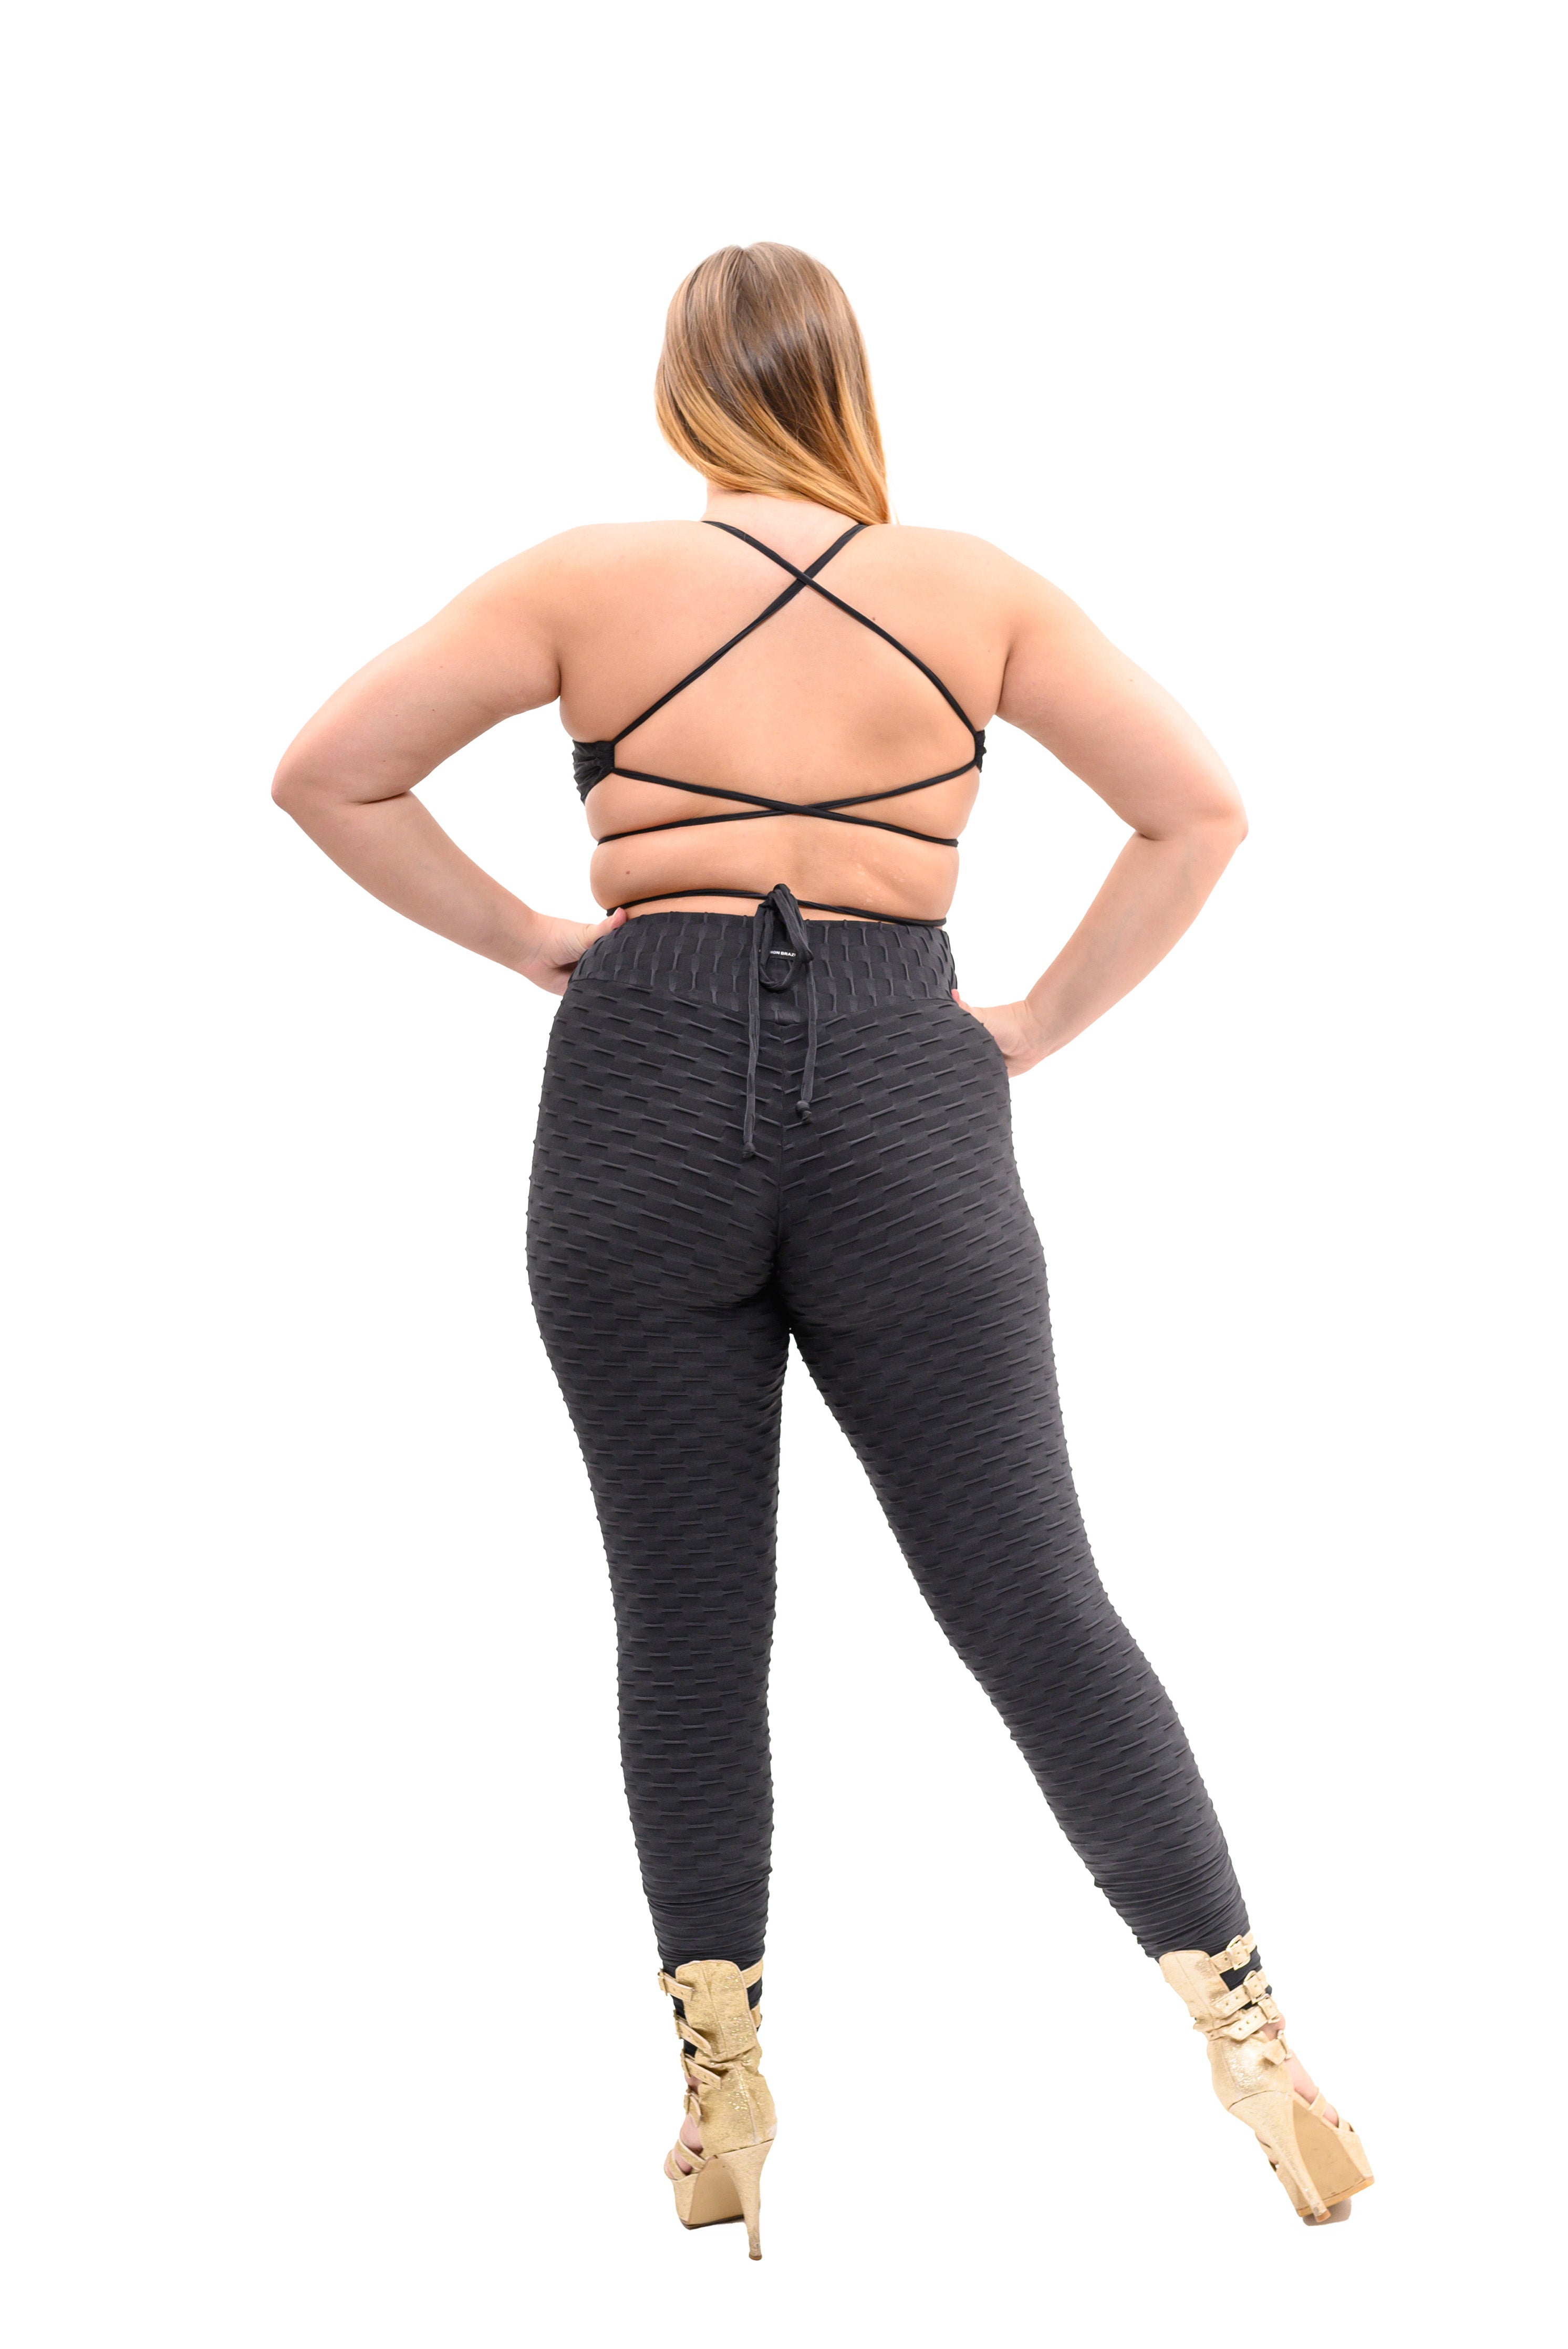 Black Jumpsuit Anti Cellulite Zero Flaws Fabric